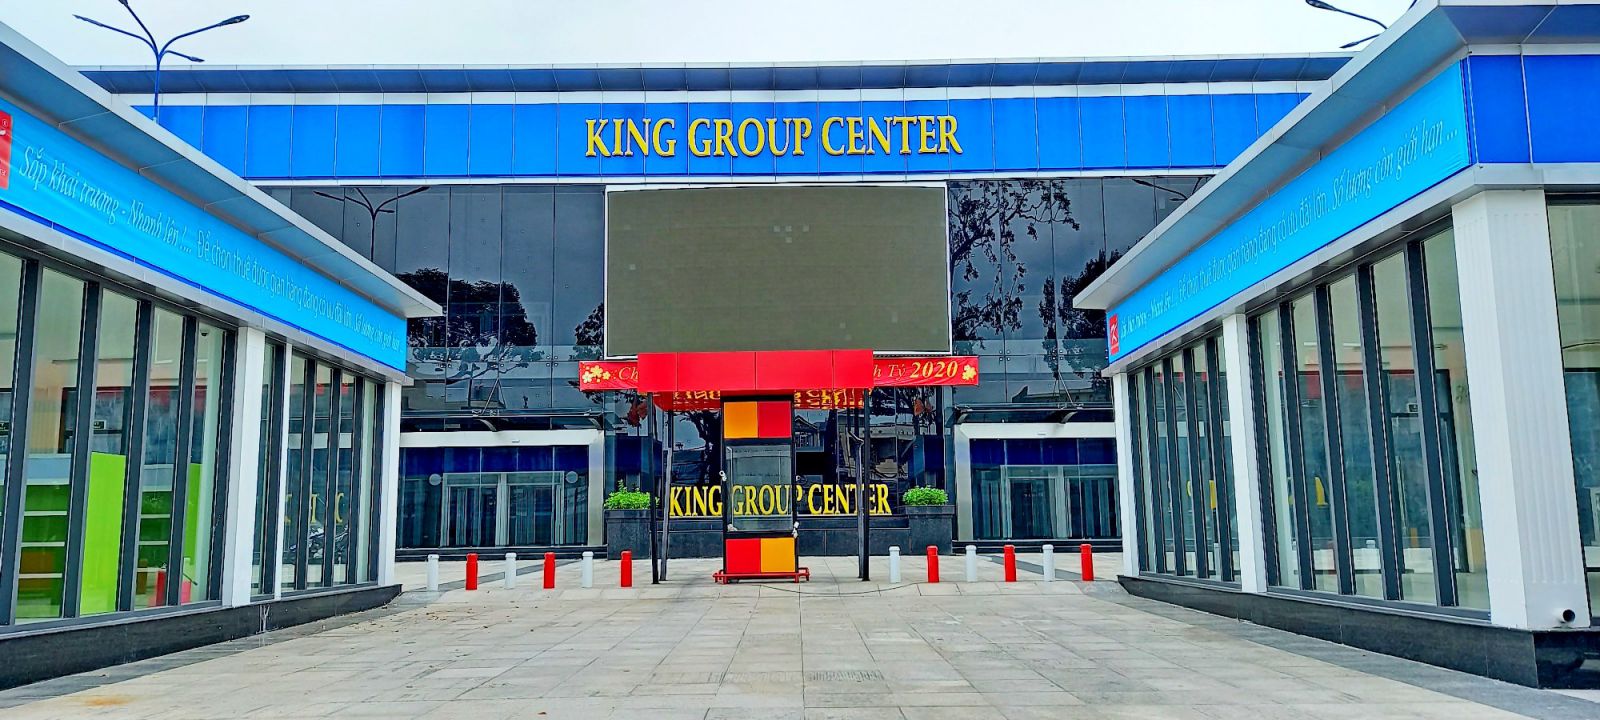 p/Trung tâm thương mại Nguyễn Trãi do King Group Center đầu tưp/đúng theo giấy phép được cơ quan chức năng cấp nhưng chưa được hoàn thuế.